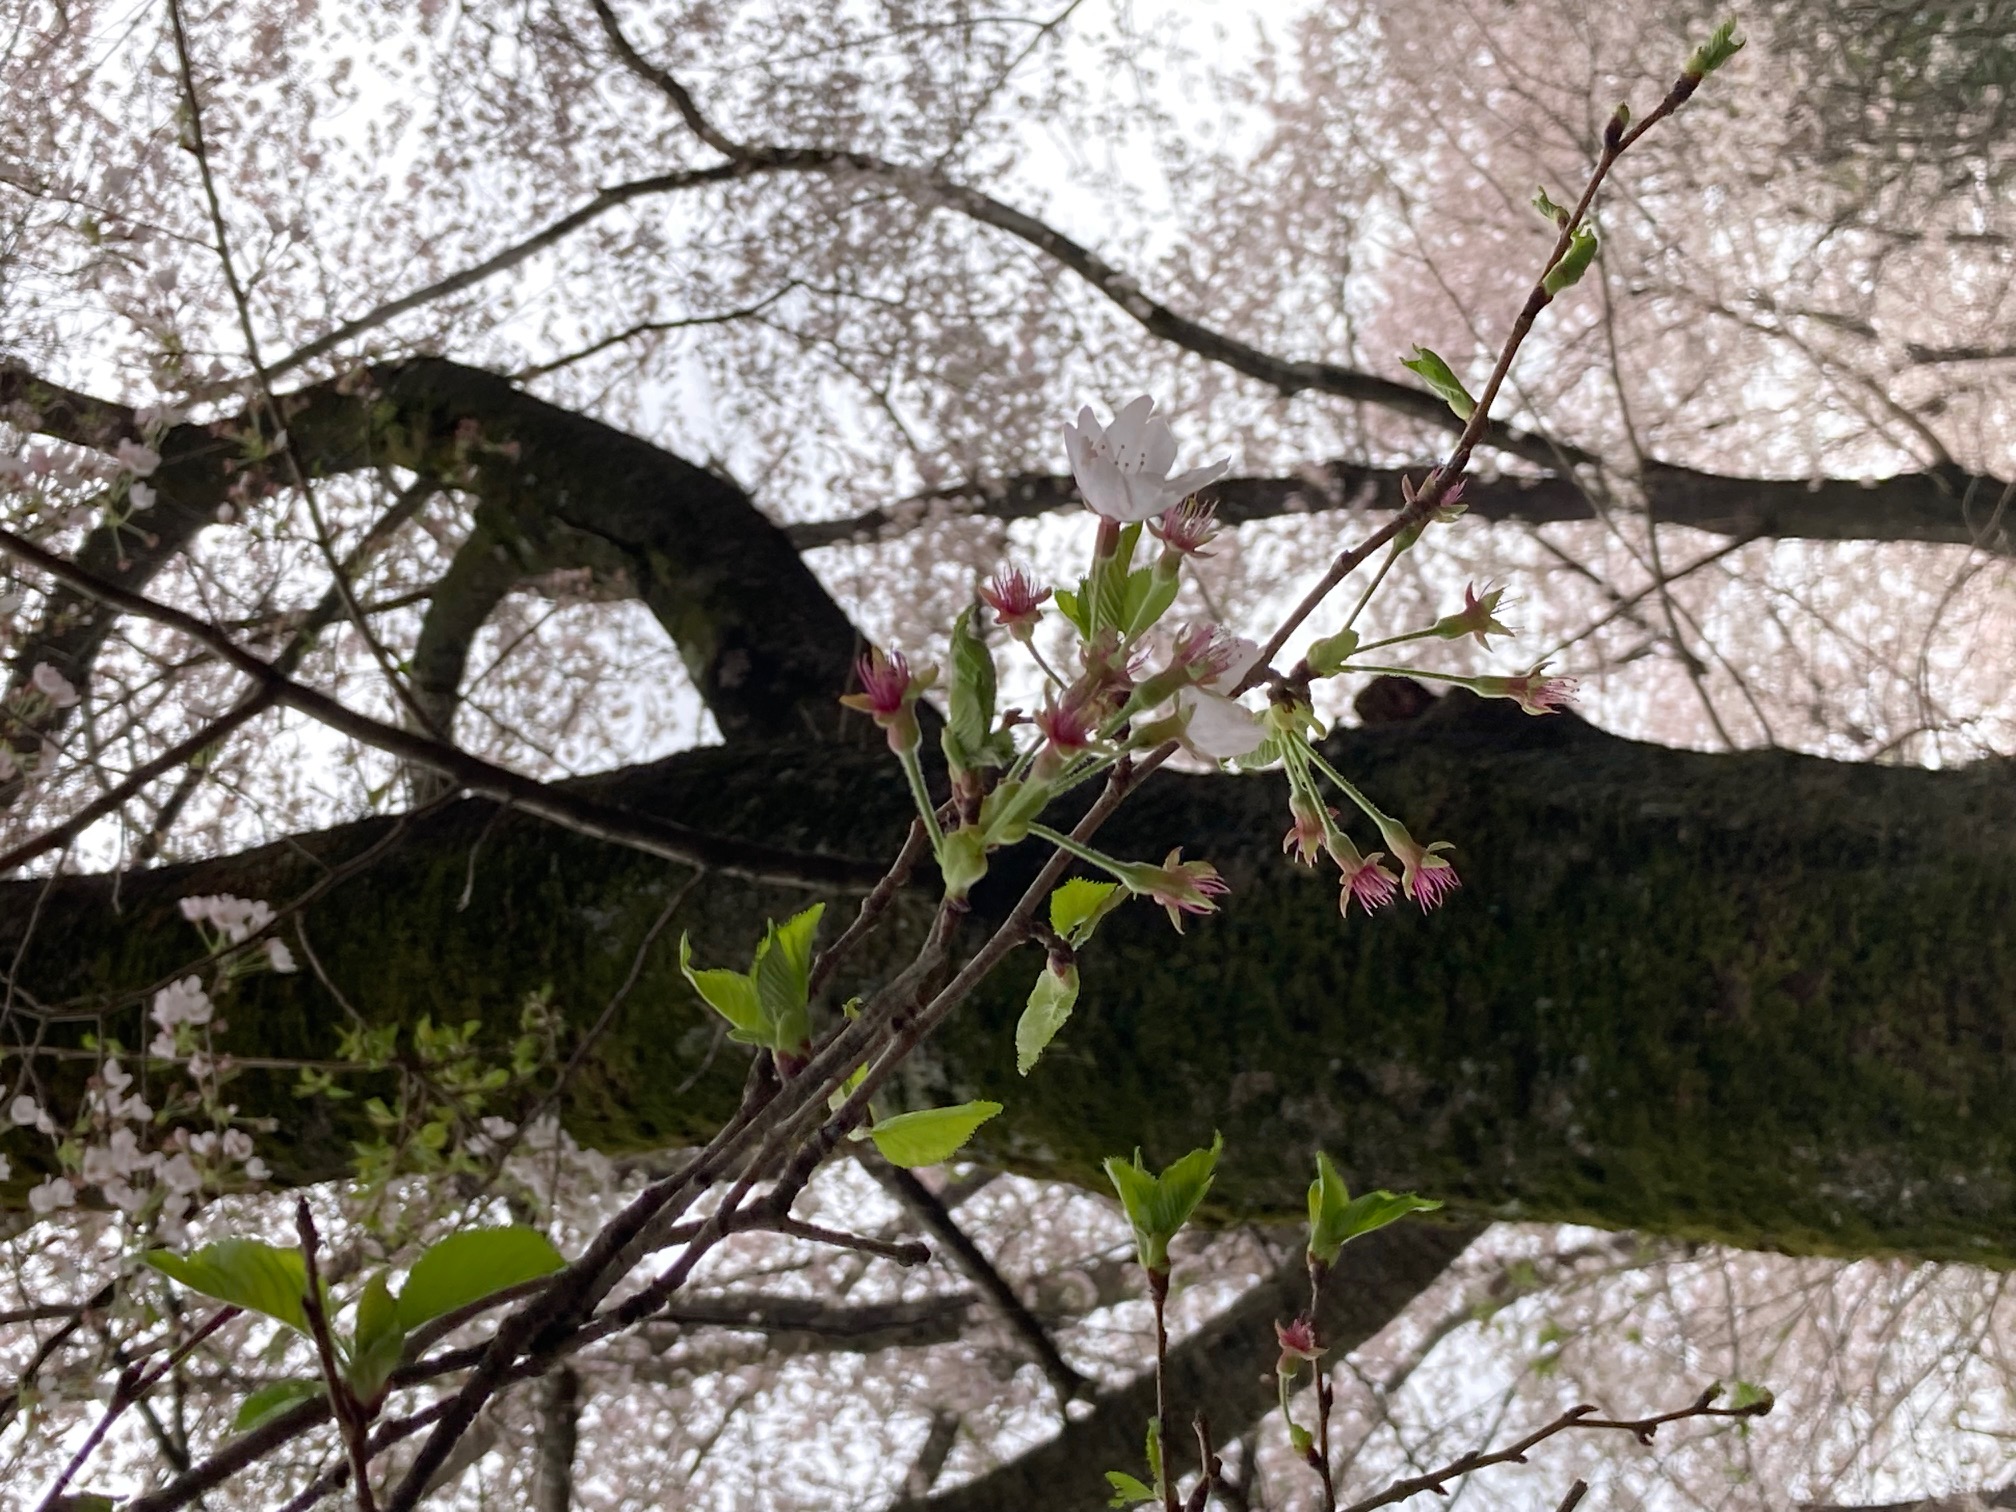 三嶋神社参道の桜には新芽が出ています